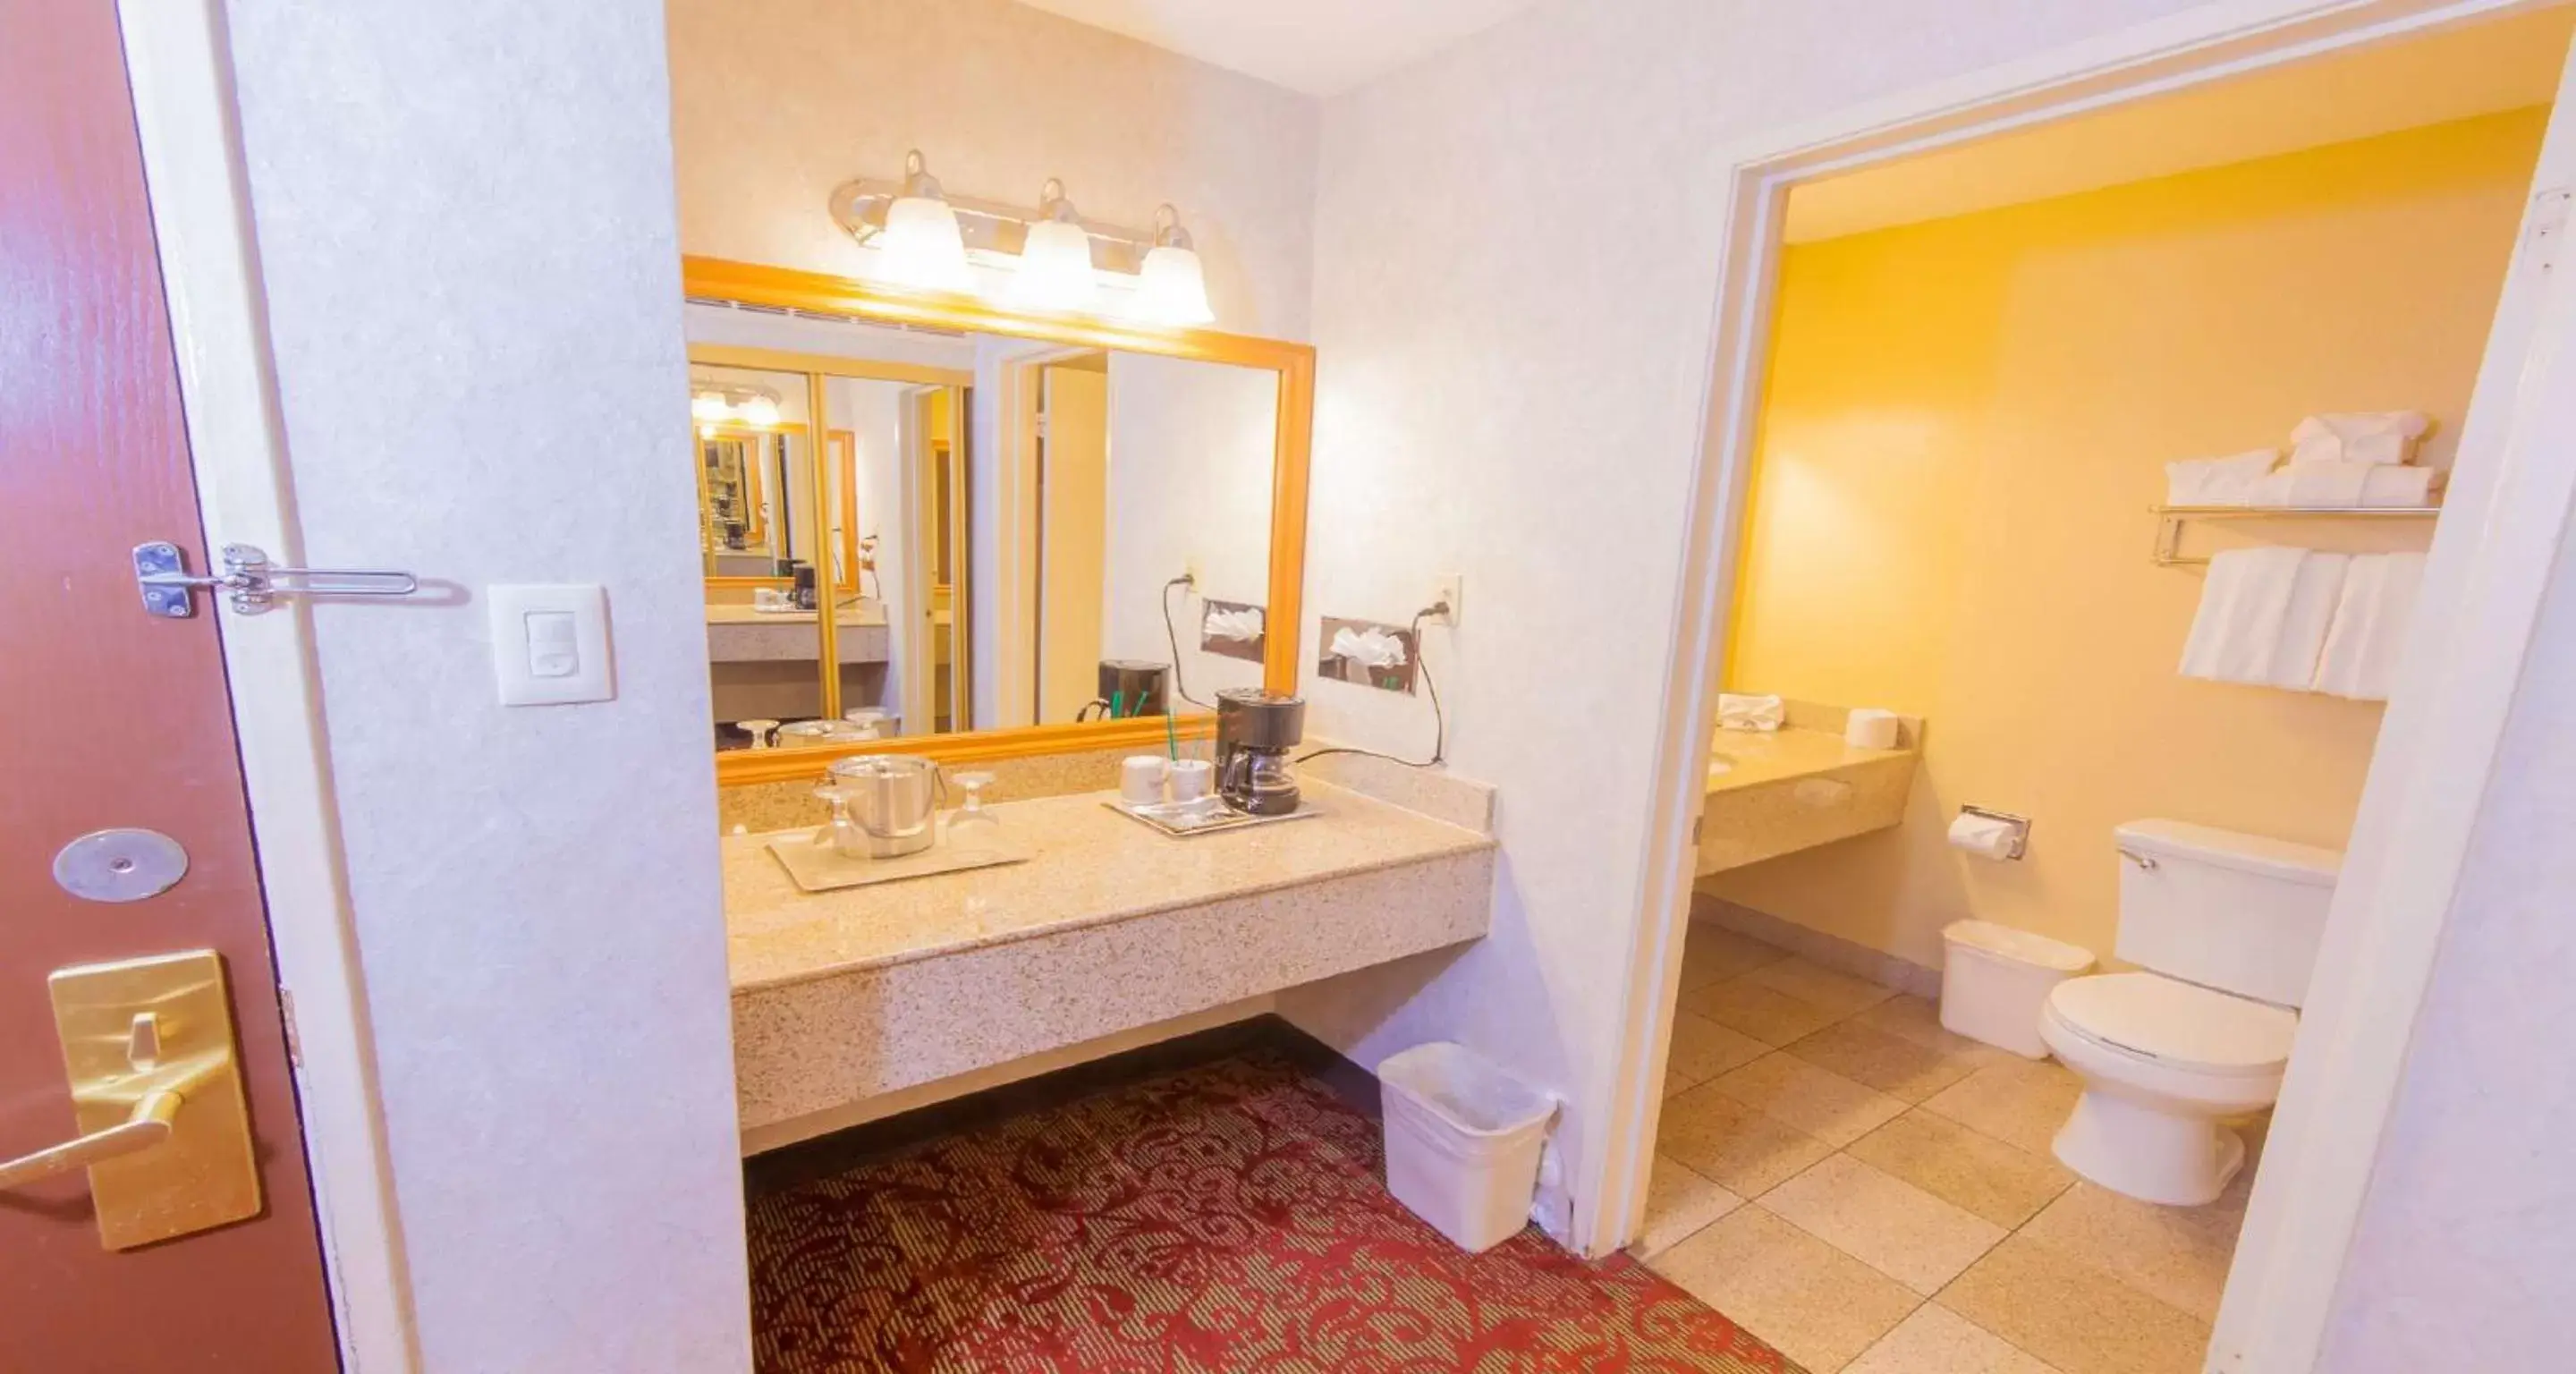 Bathroom in Duniya Hotel